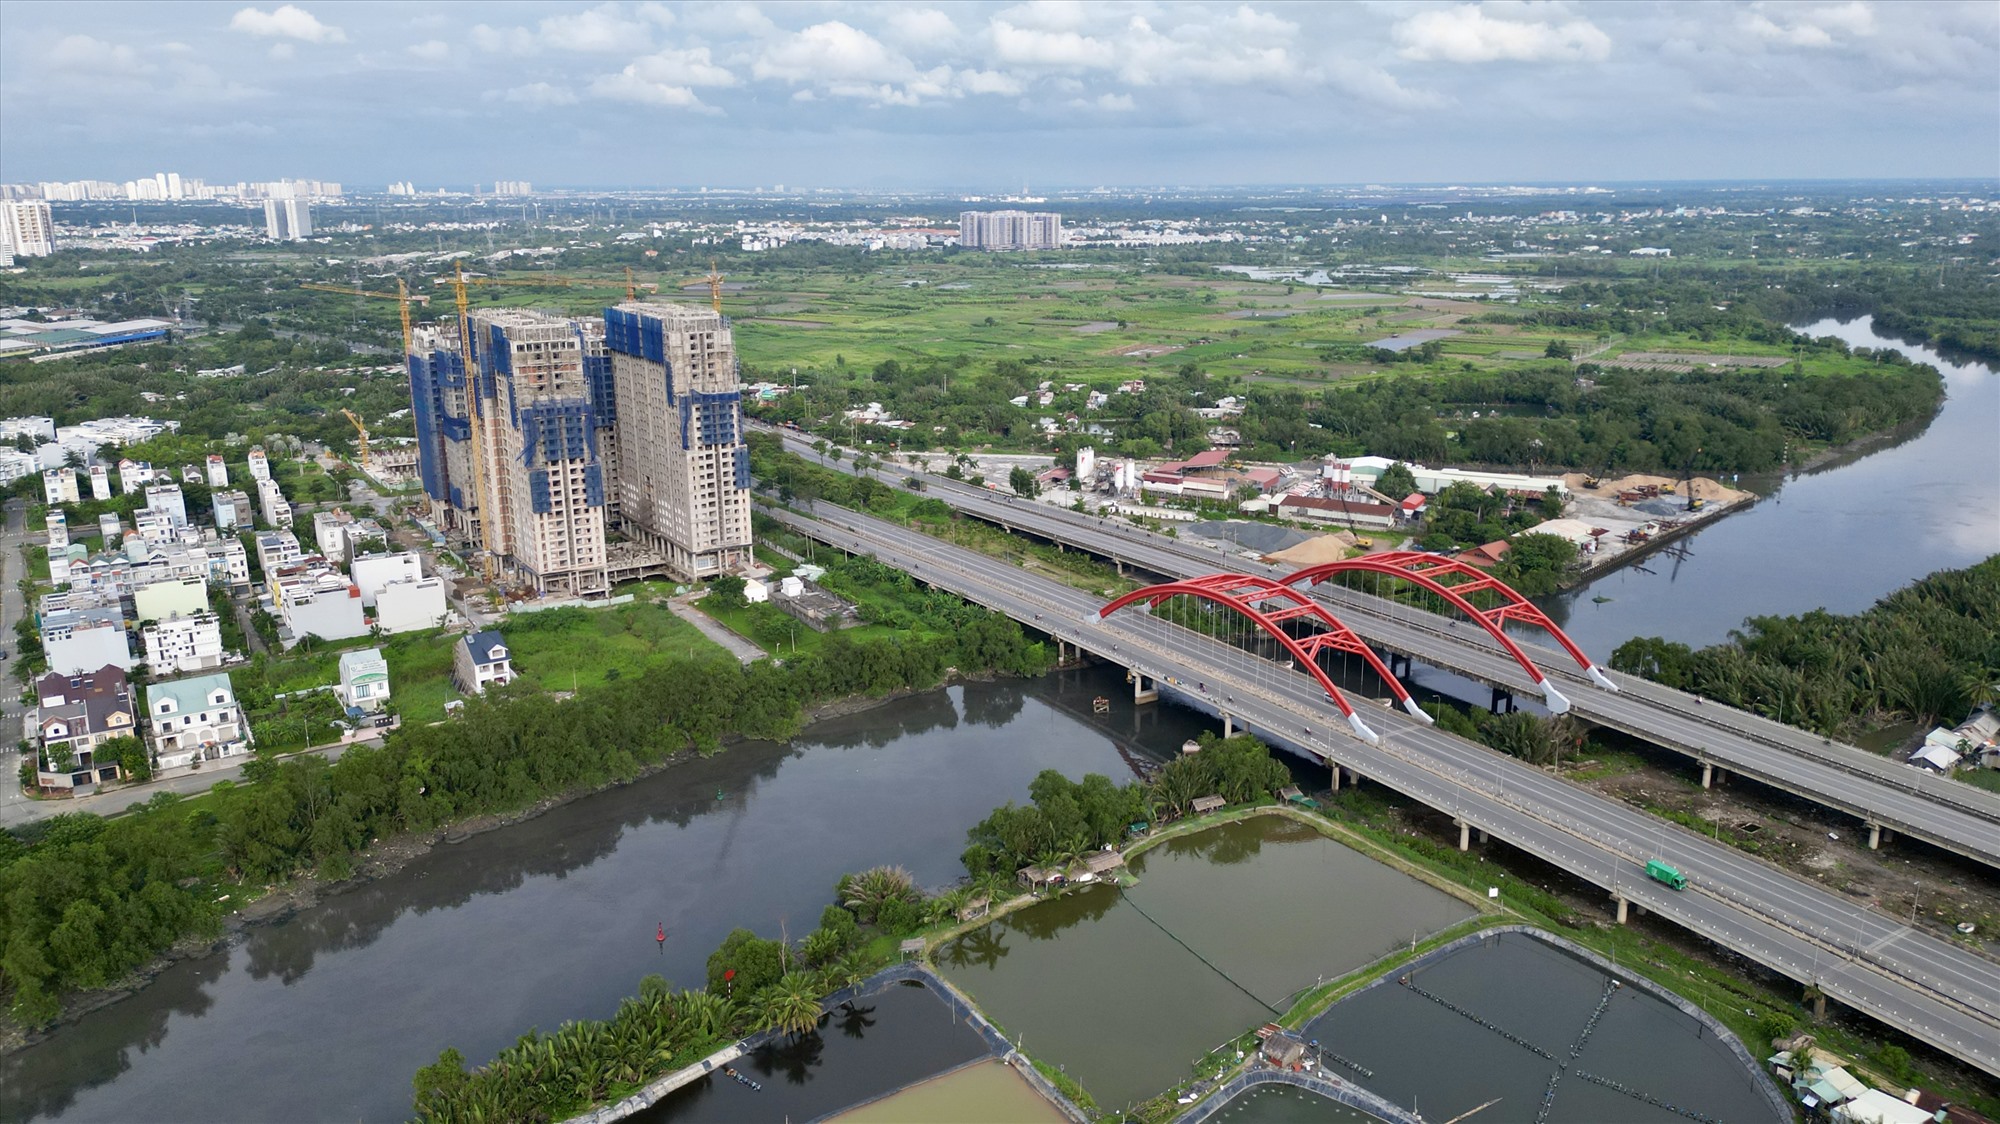 Đây được xem là một trong những đại lộ lớn nhất thành phố, là tuyến giao thông huyết mạch của khu vực Nam TPHCM, tạo điều kiện để phát triển khu đô thị Nam Sài Gòn, khu công nghiệp cảng Hiệp Phước, Phú Mỹ Hưng...